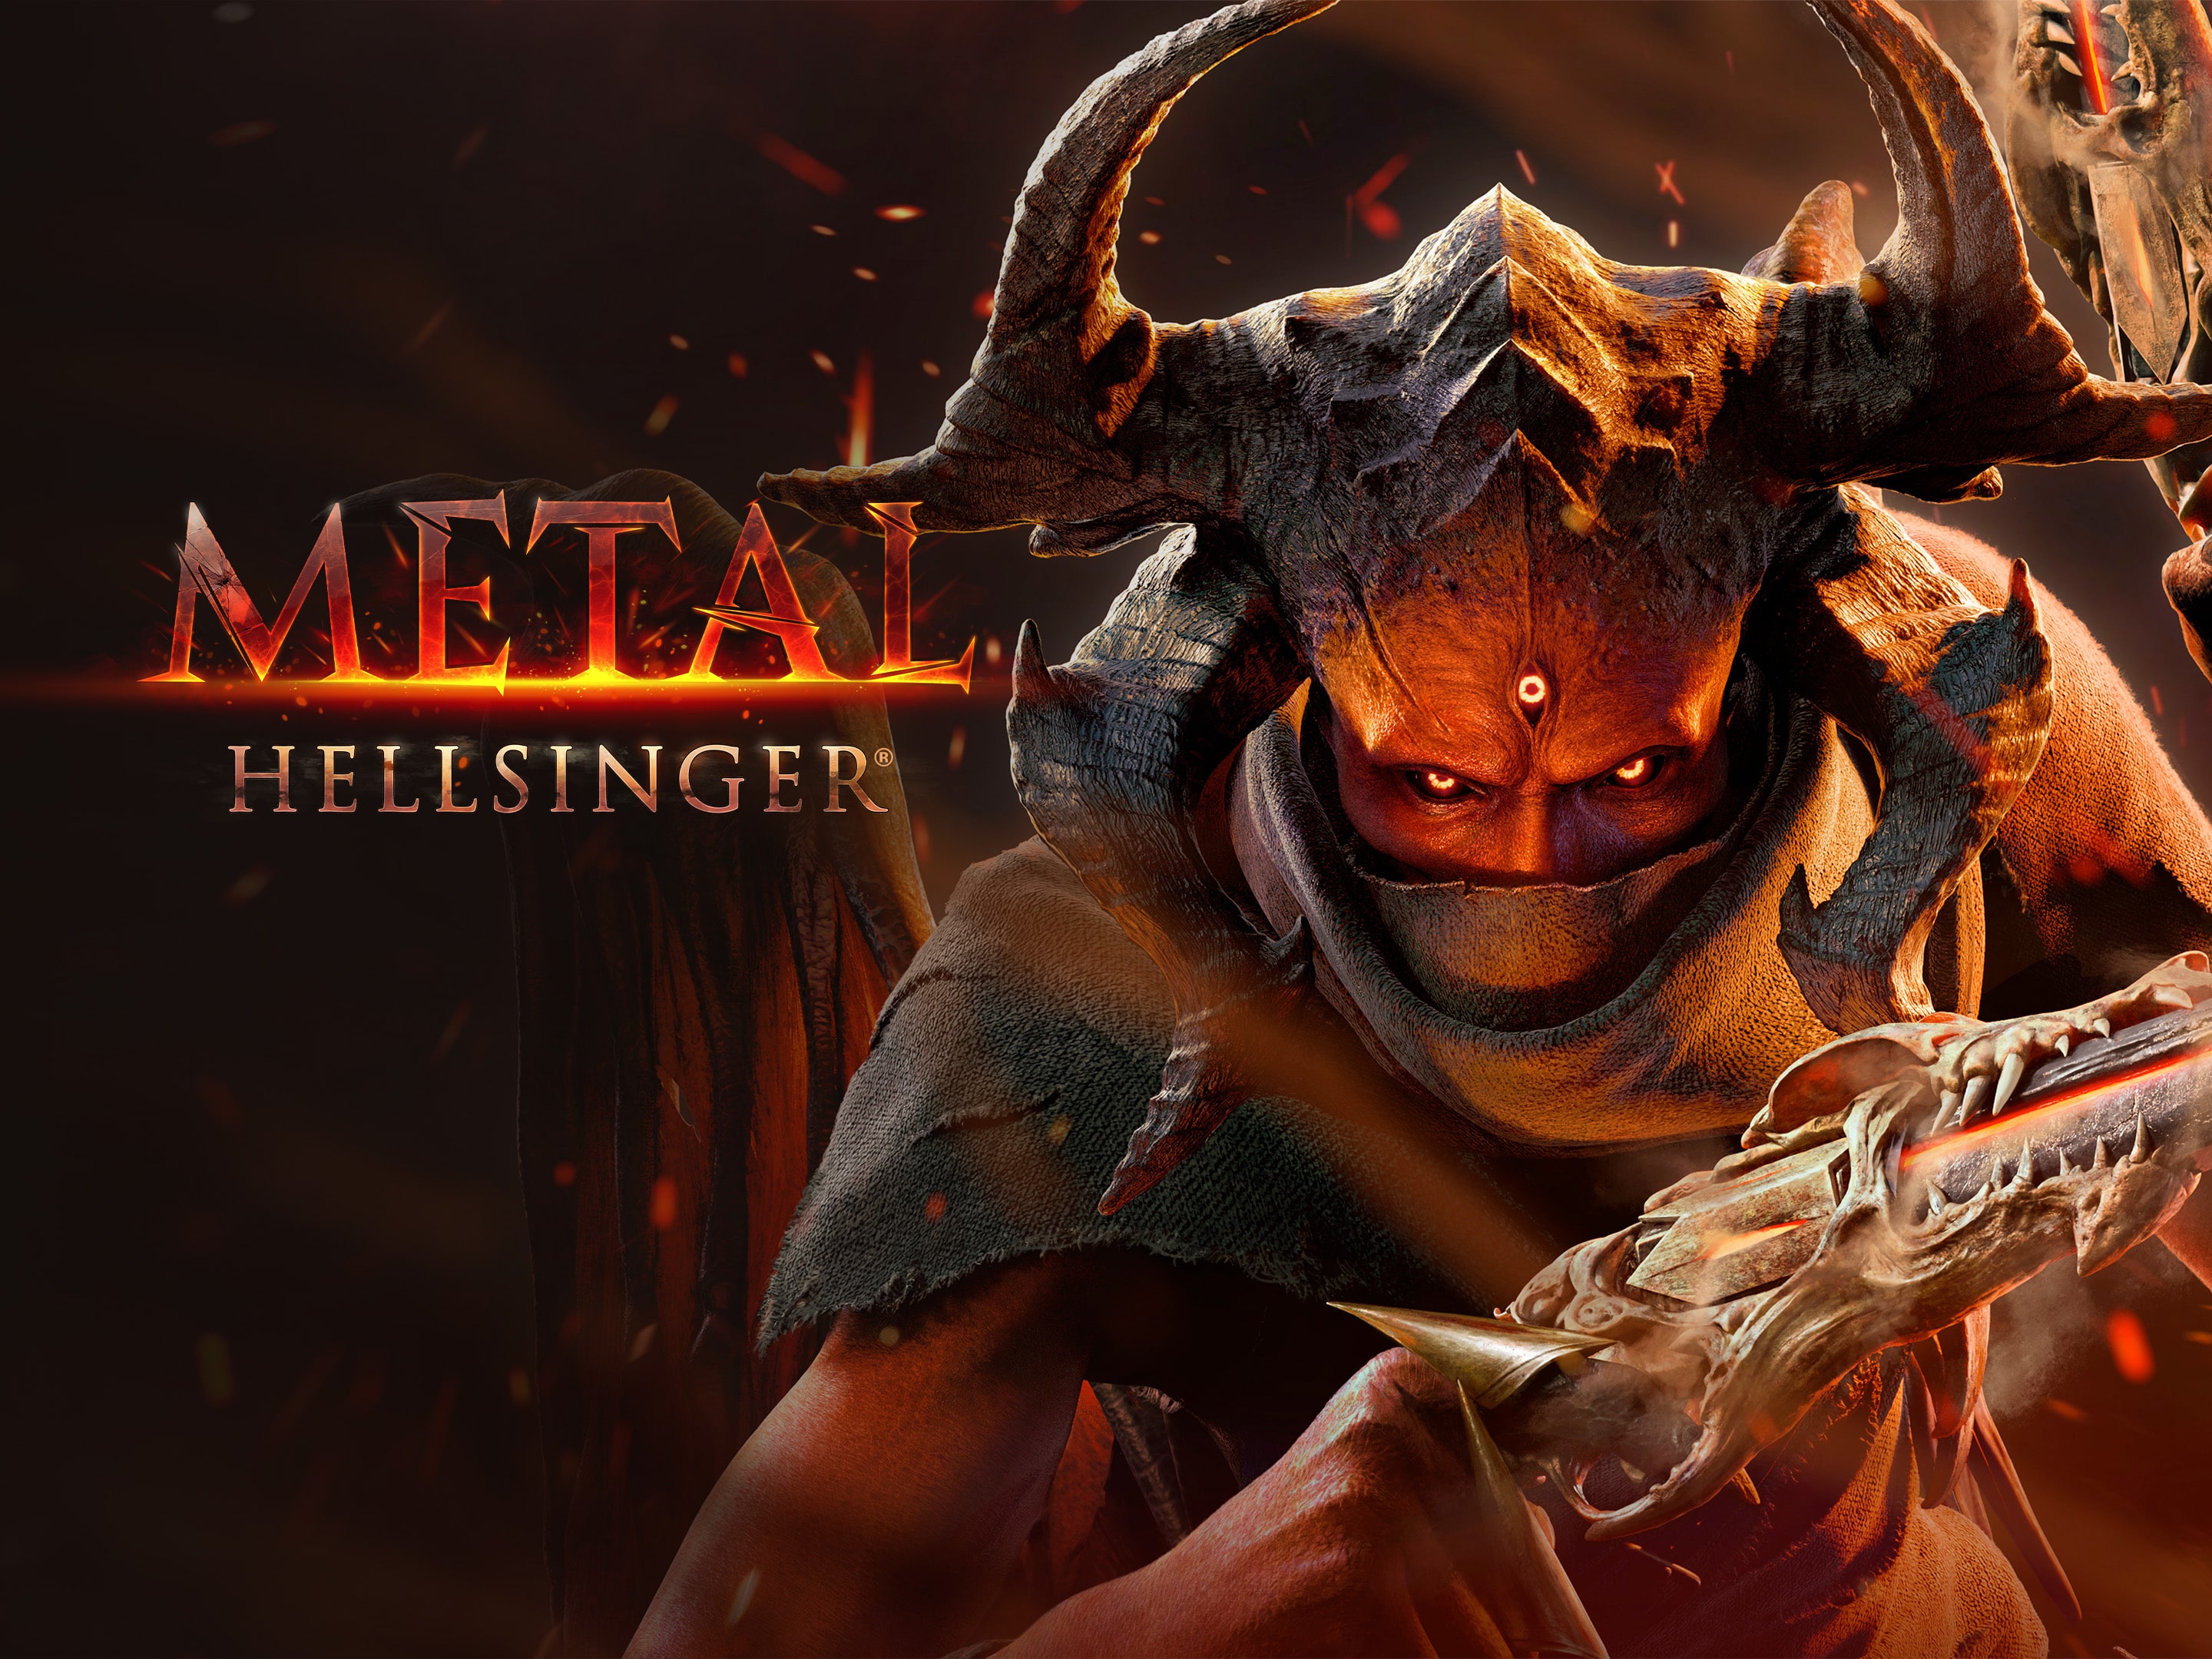 Save 25% on Metal: Hellsinger - Essential Hits Pack on Steam